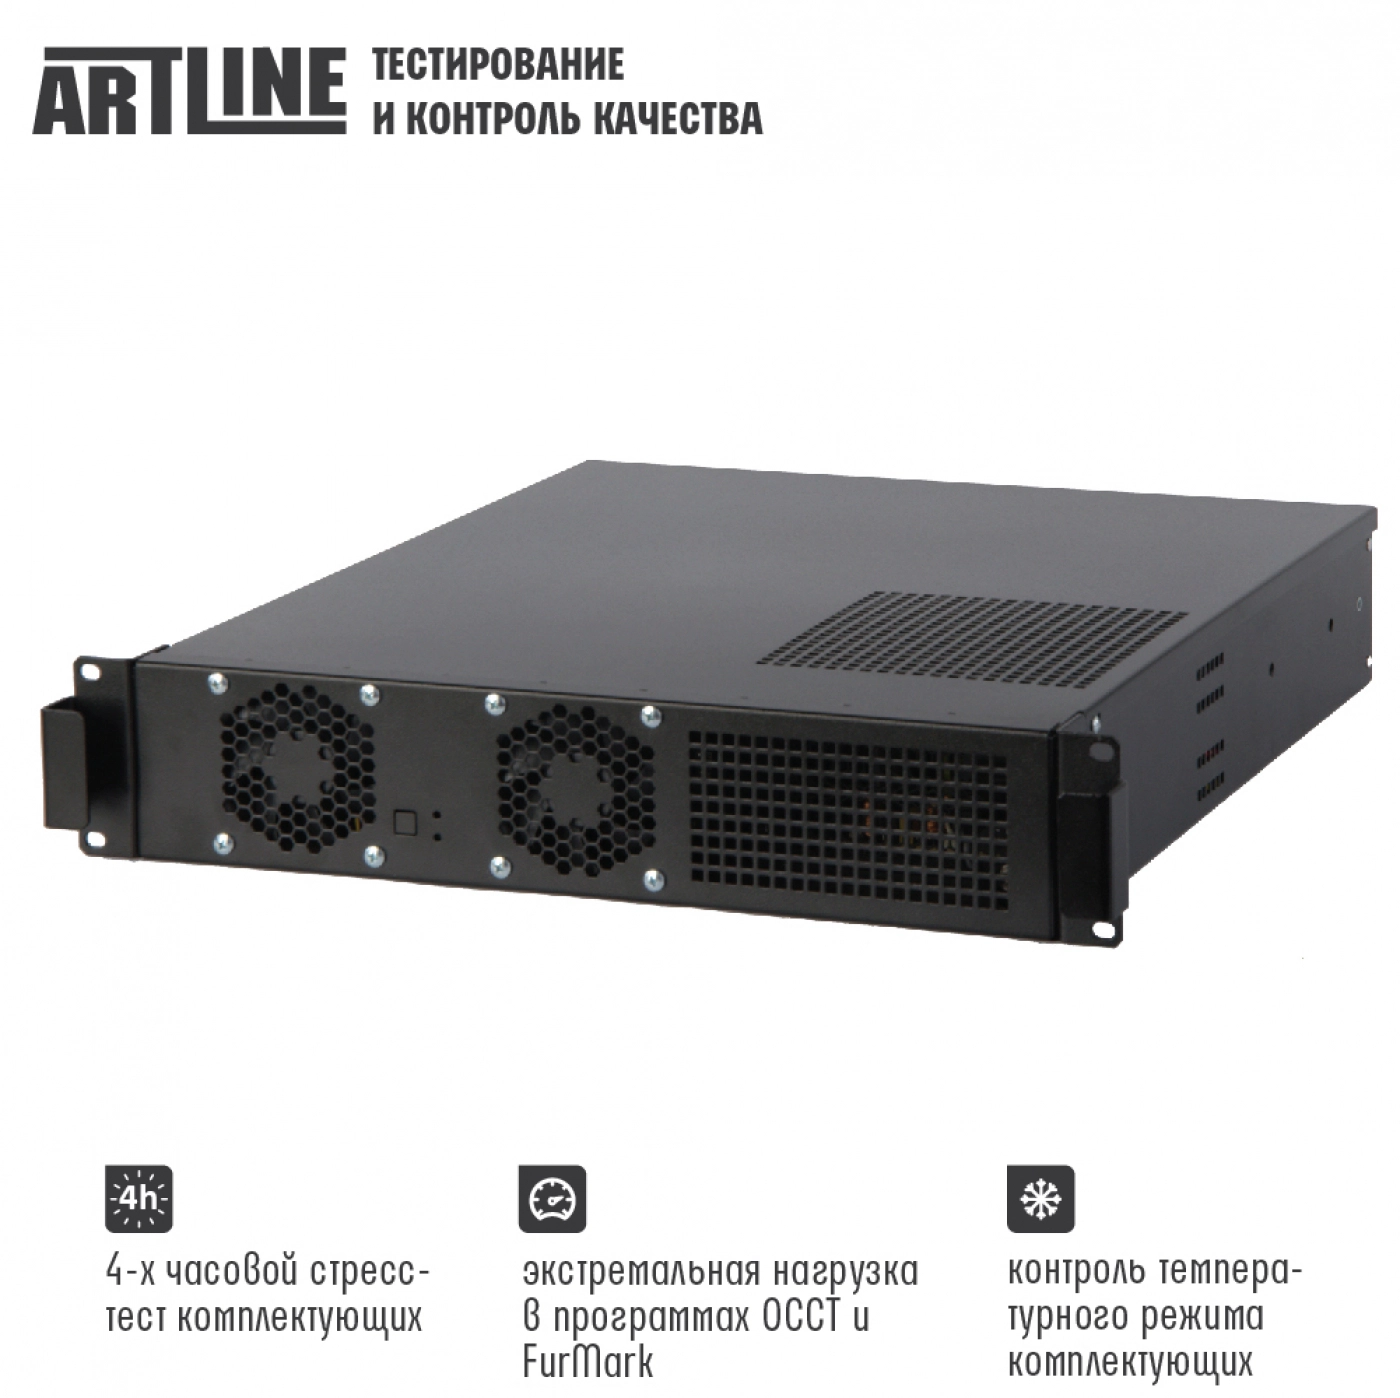 Купить Сервер ARTLINE Business R15v10 - фото 4